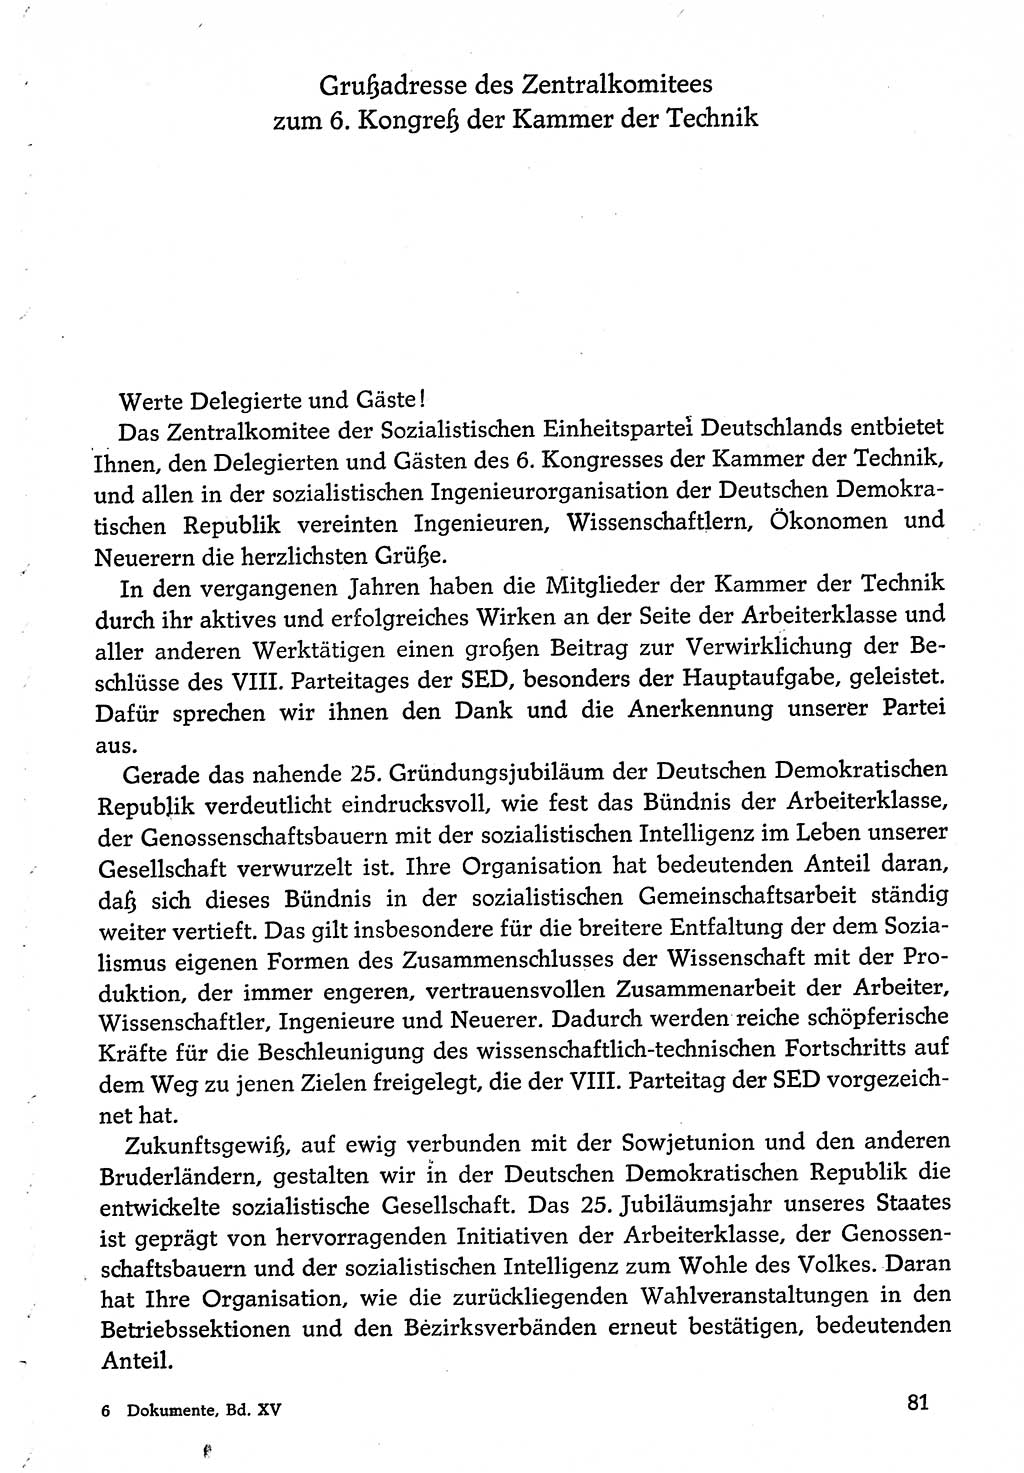 Dokumente der Sozialistischen Einheitspartei Deutschlands (SED) [Deutsche Demokratische Republik (DDR)] 1974-1975, Seite 81 (Dok. SED DDR 1978, Bd. ⅩⅤ, S. 81)